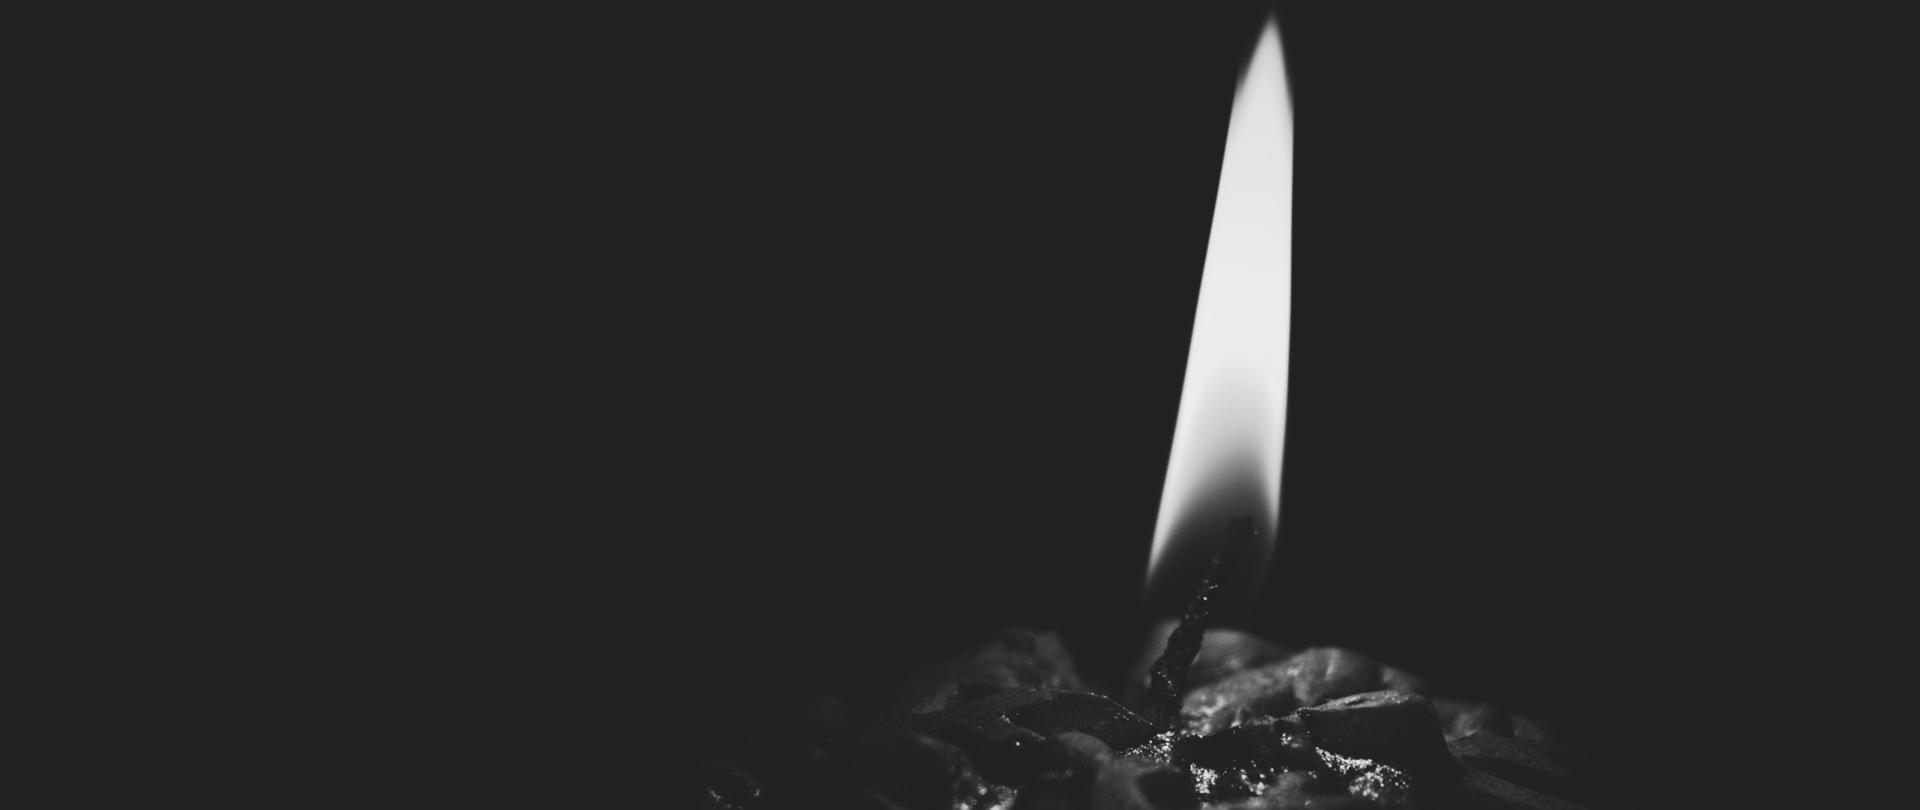 biało czarne zdjęcie dogaszającej się świeczki